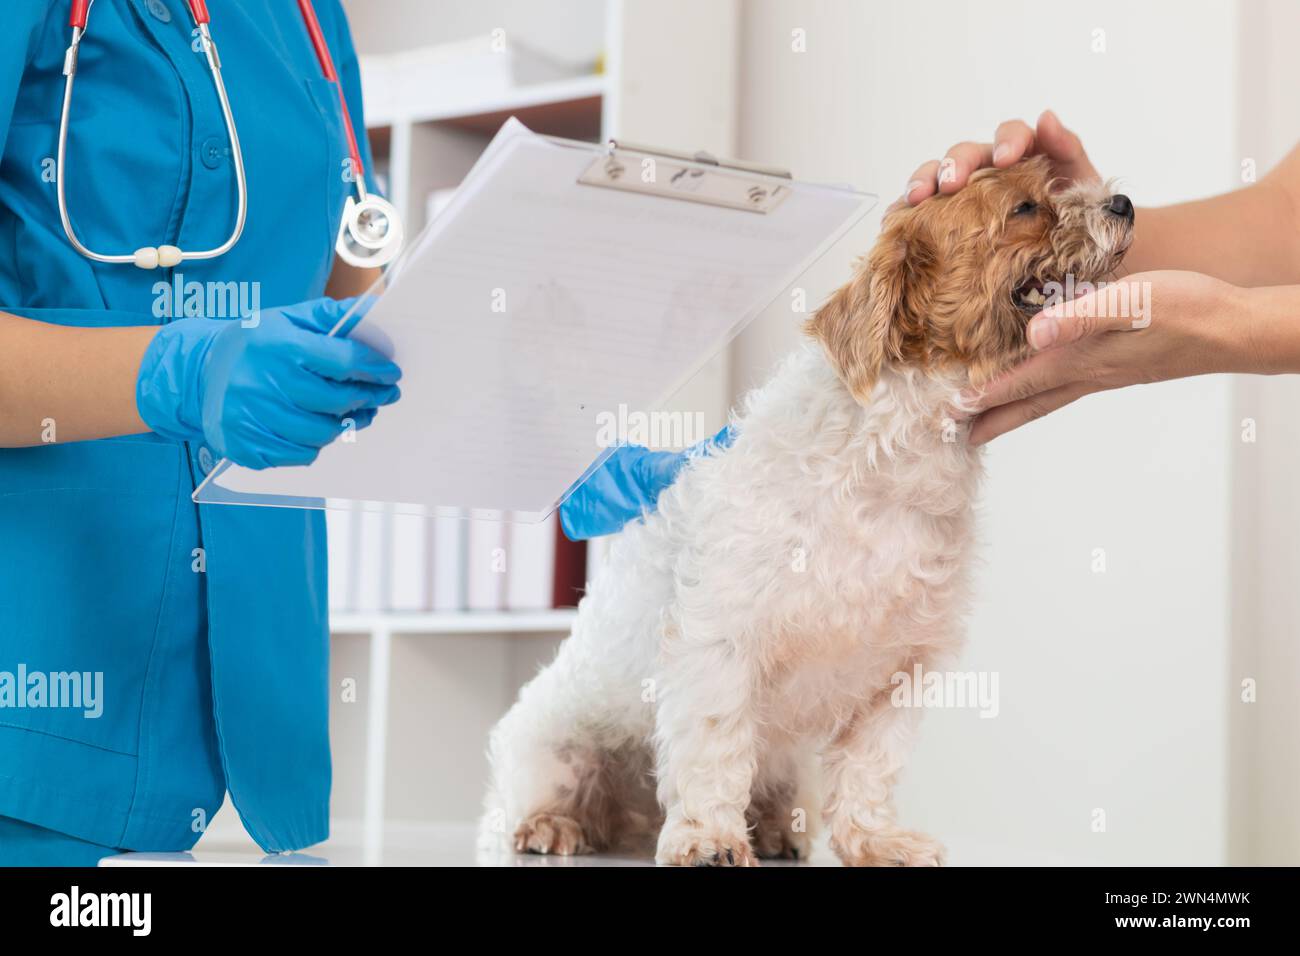 Tierärzte führen jährliche Kontrollen an Hunden durch, um mögliche Krankheiten zu suchen und sie schnell zu behandeln, um die Gesundheit des Haustiers sicherzustellen. Tierarzt i Stockfoto